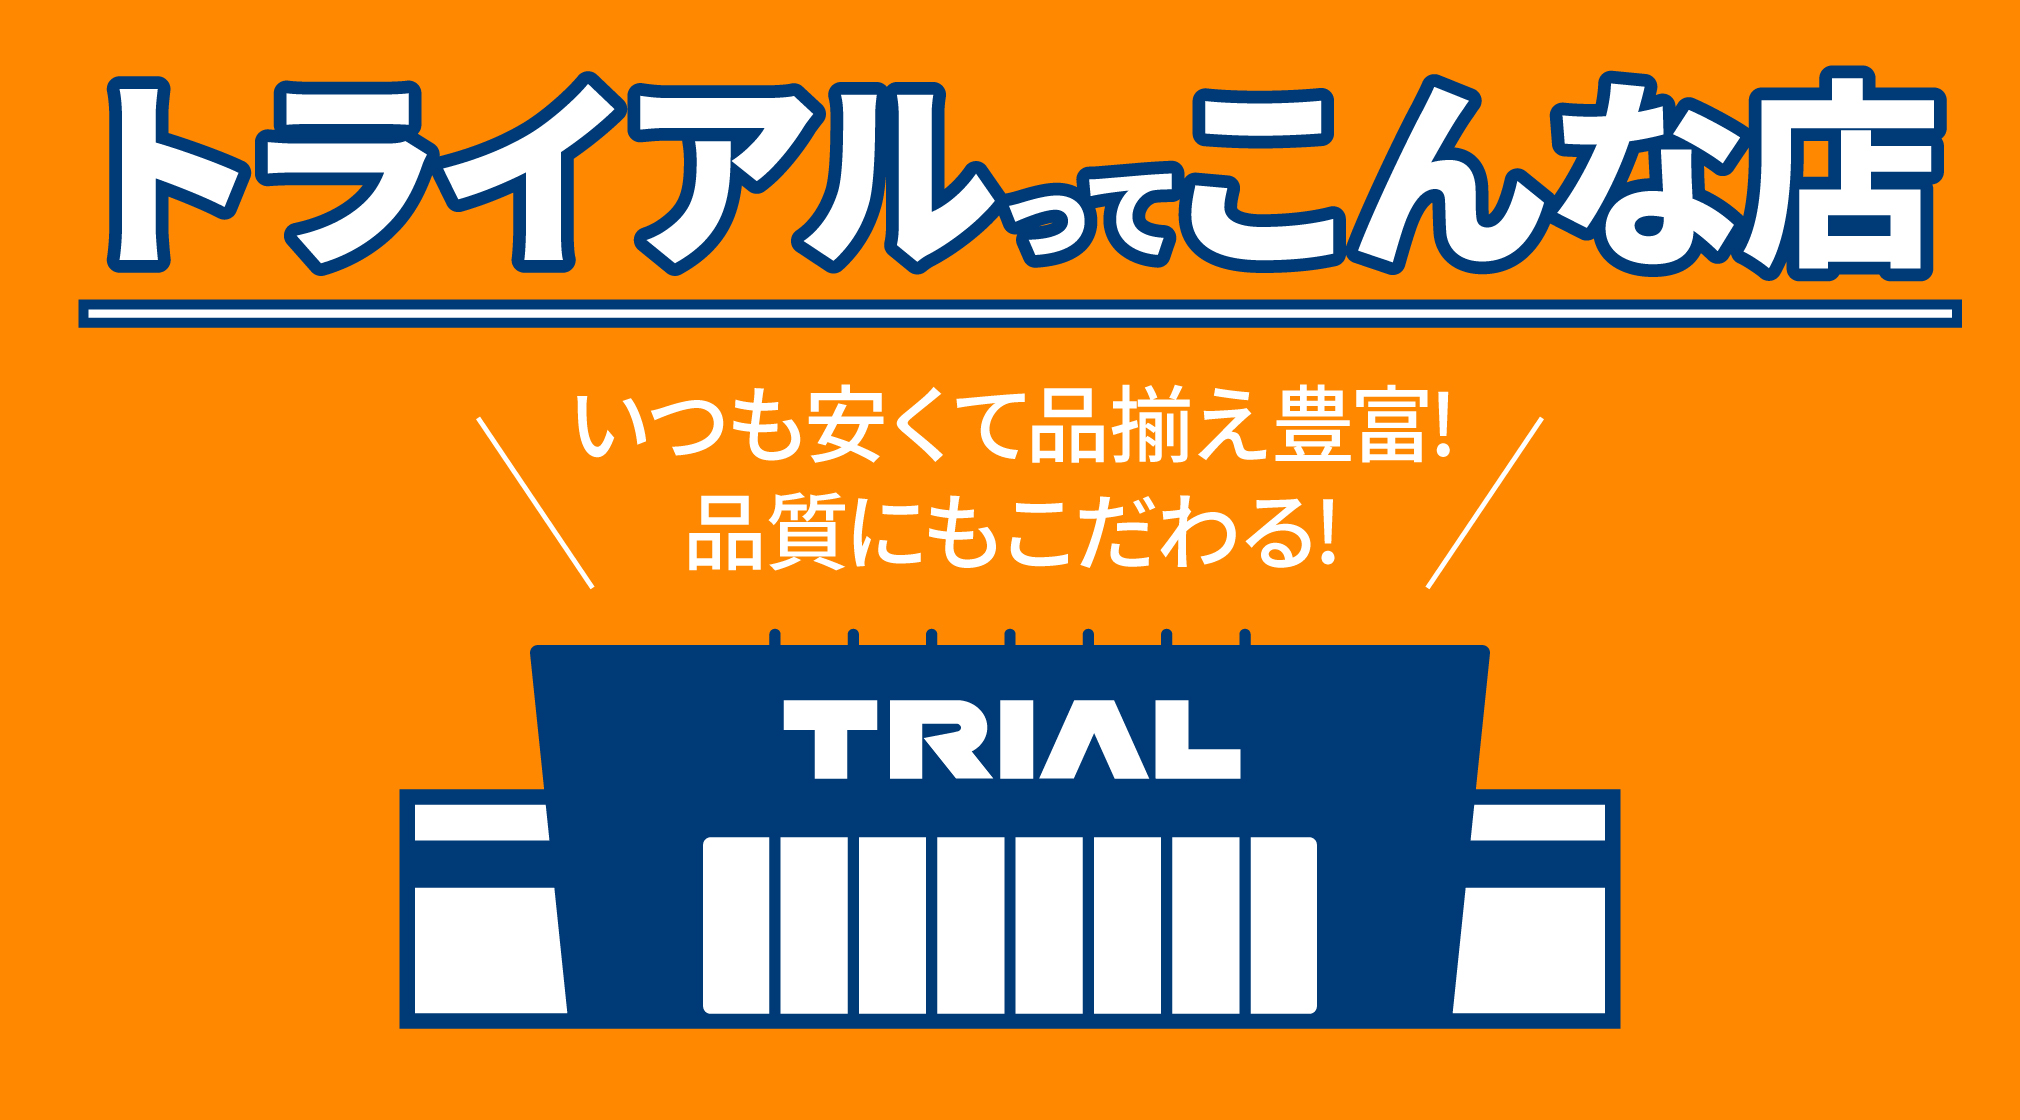 http://trial-website-dev.retail-ai.jp/mag/detail/249/?utm_source=HP&utm_medium=main&utm_campaign=TRIALMAGAZINE&utm_content=EDLP